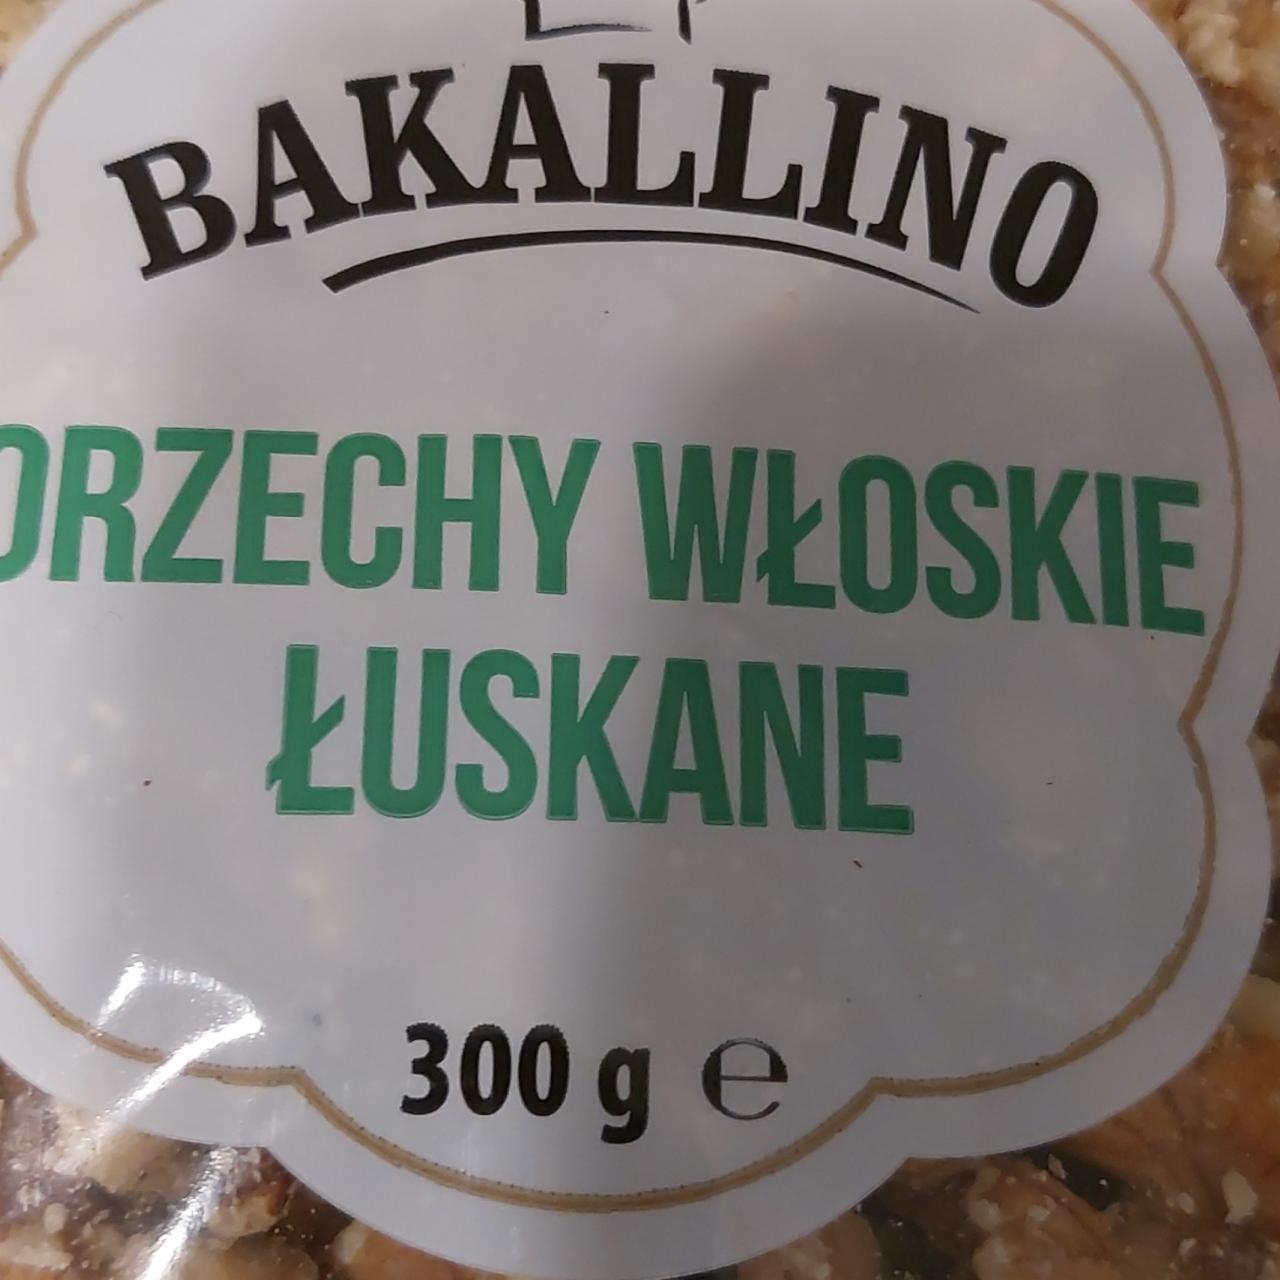 Фото - грецкие орехи чищенные Bakallino